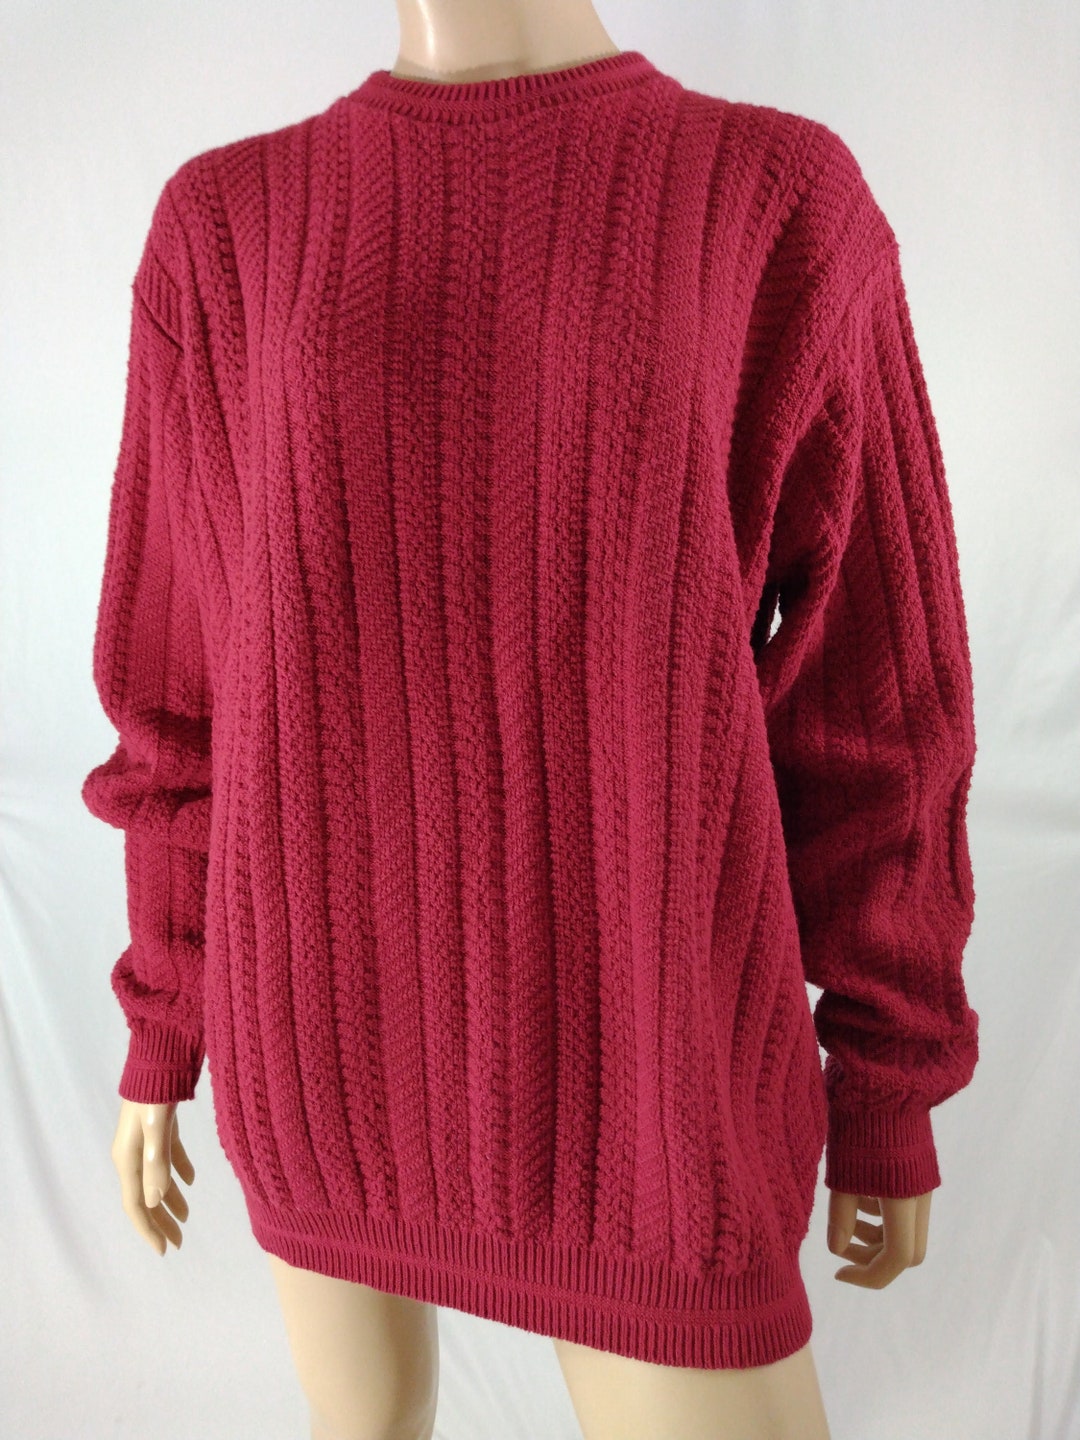 Bill Blass Sweater Men's 80's 90's Red Textured Long Sleeve 100% Cotton ...